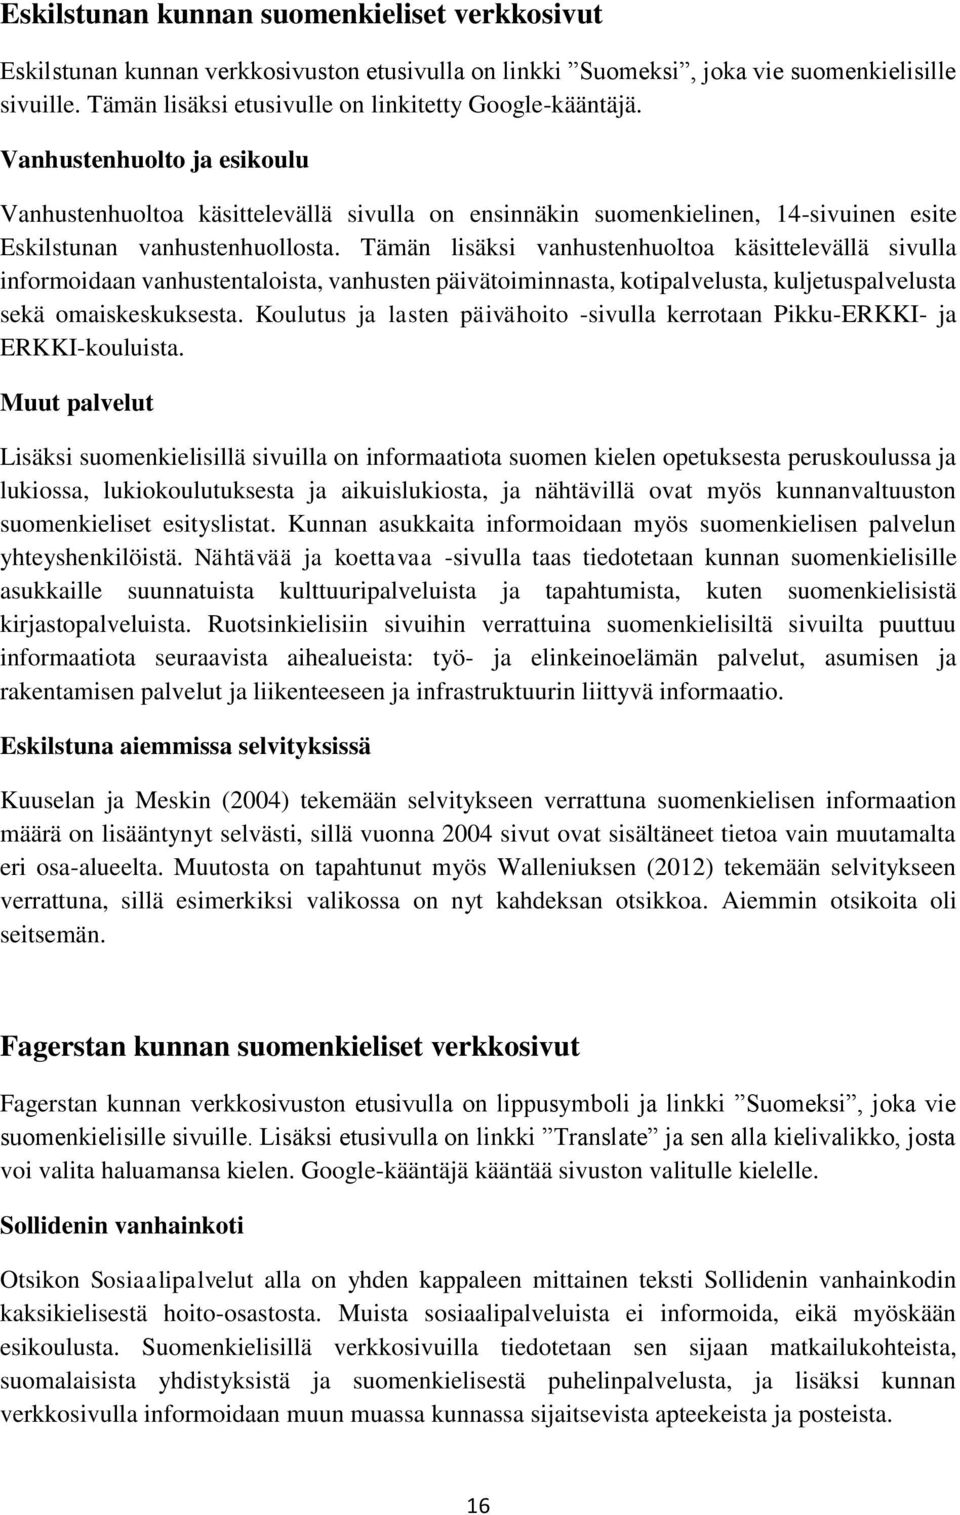 Vanhustenhuolto ja esikoulu Vanhustenhuoltoa käsittelevällä sivulla on ensinnäkin suomenkielinen, 14-sivuinen esite Eskilstunan vanhustenhuollosta.